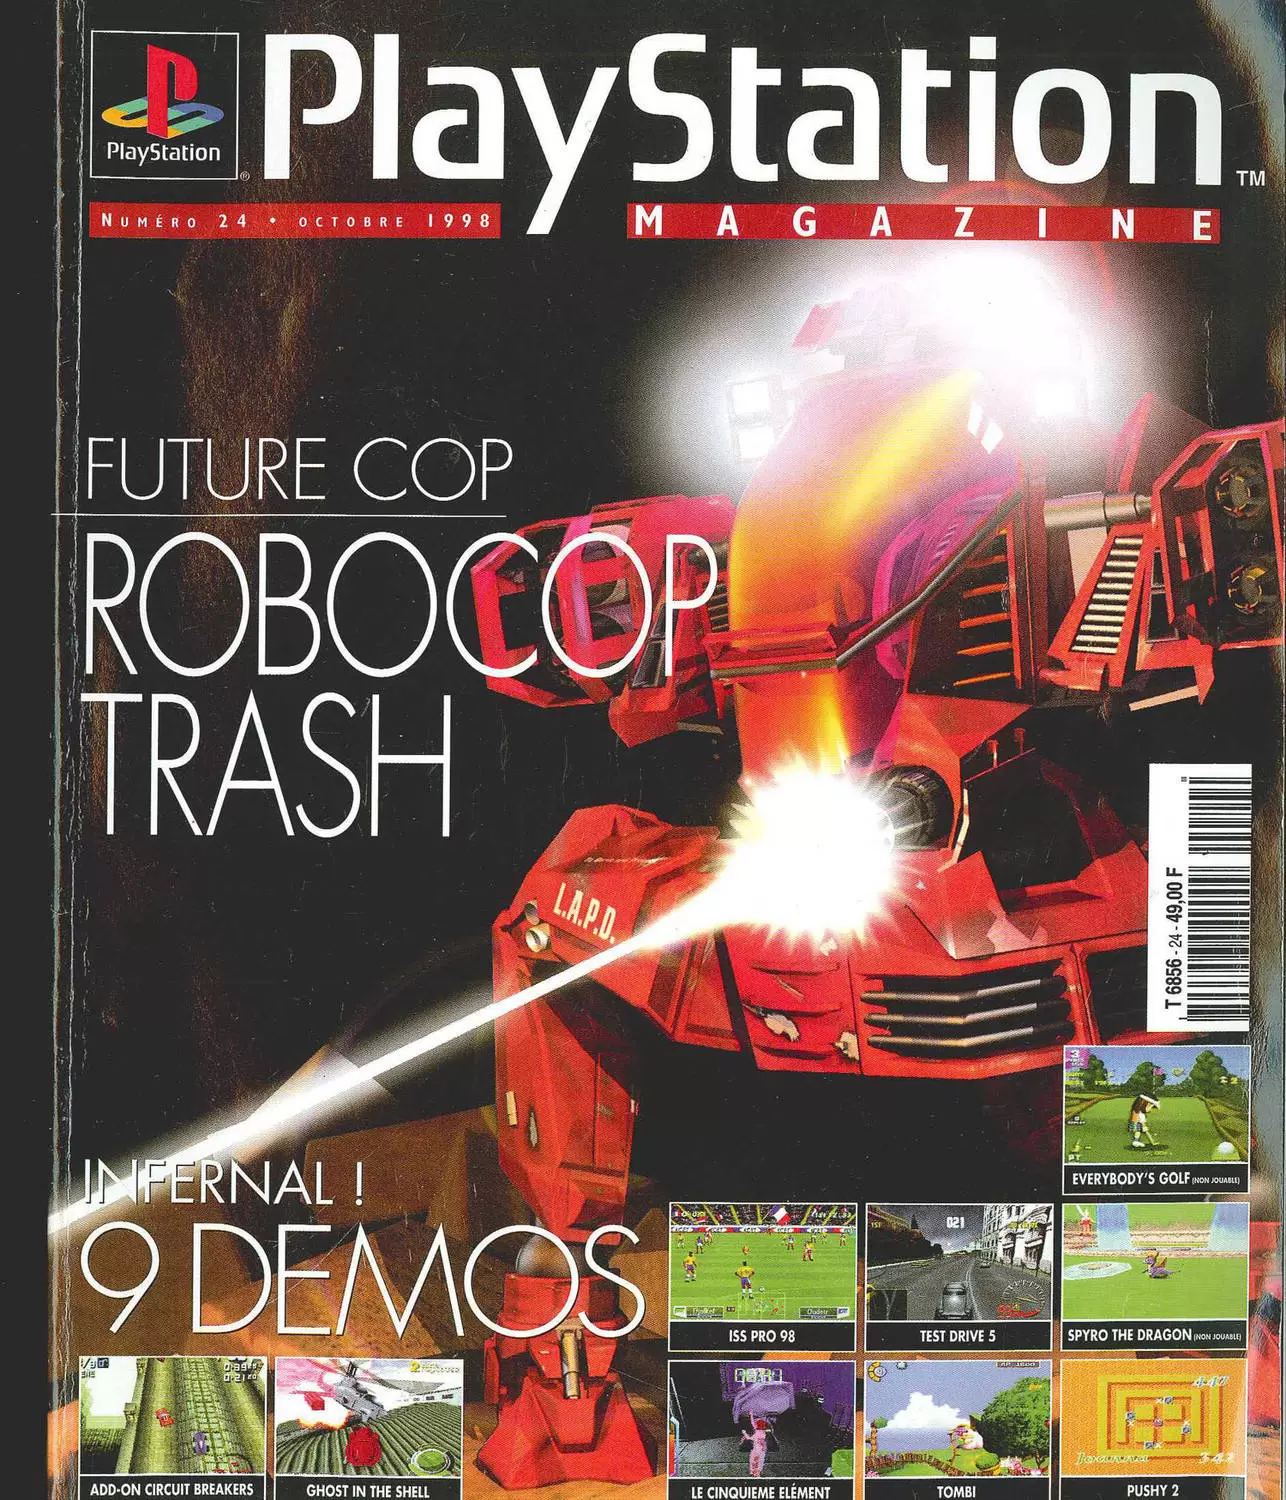 Playstation Magazine - Playstation Magazine #24